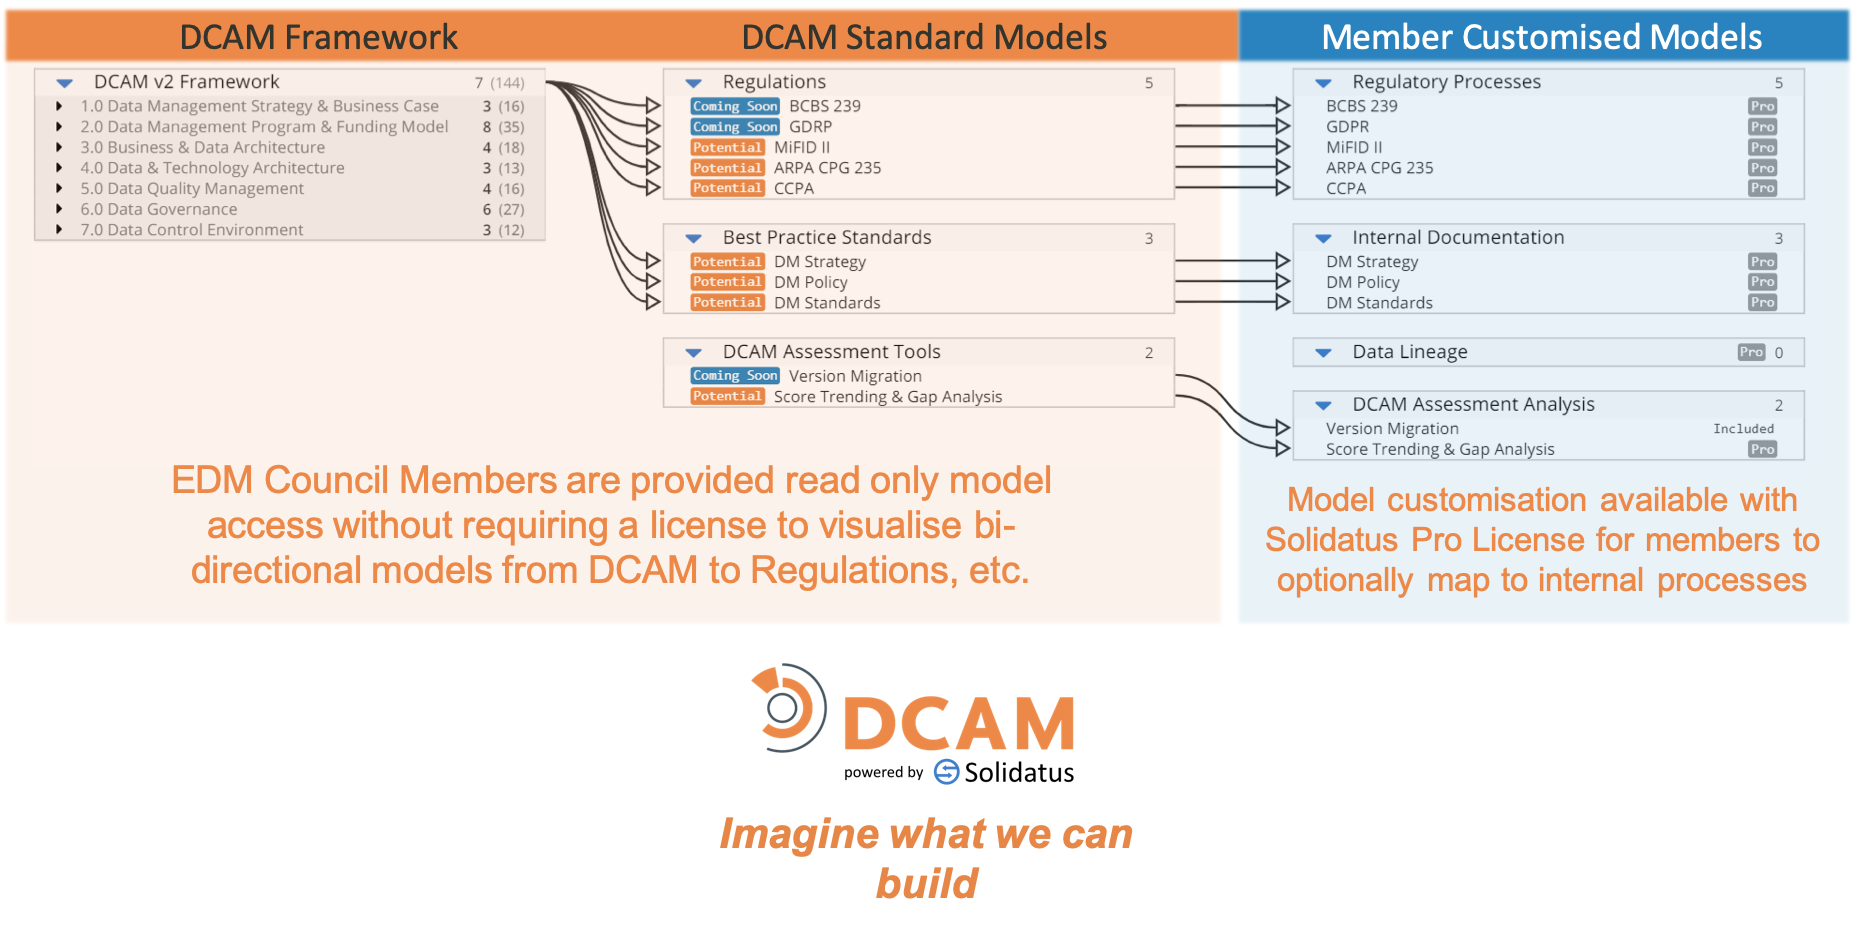 EDMC Solidatus Pro Use Case Image